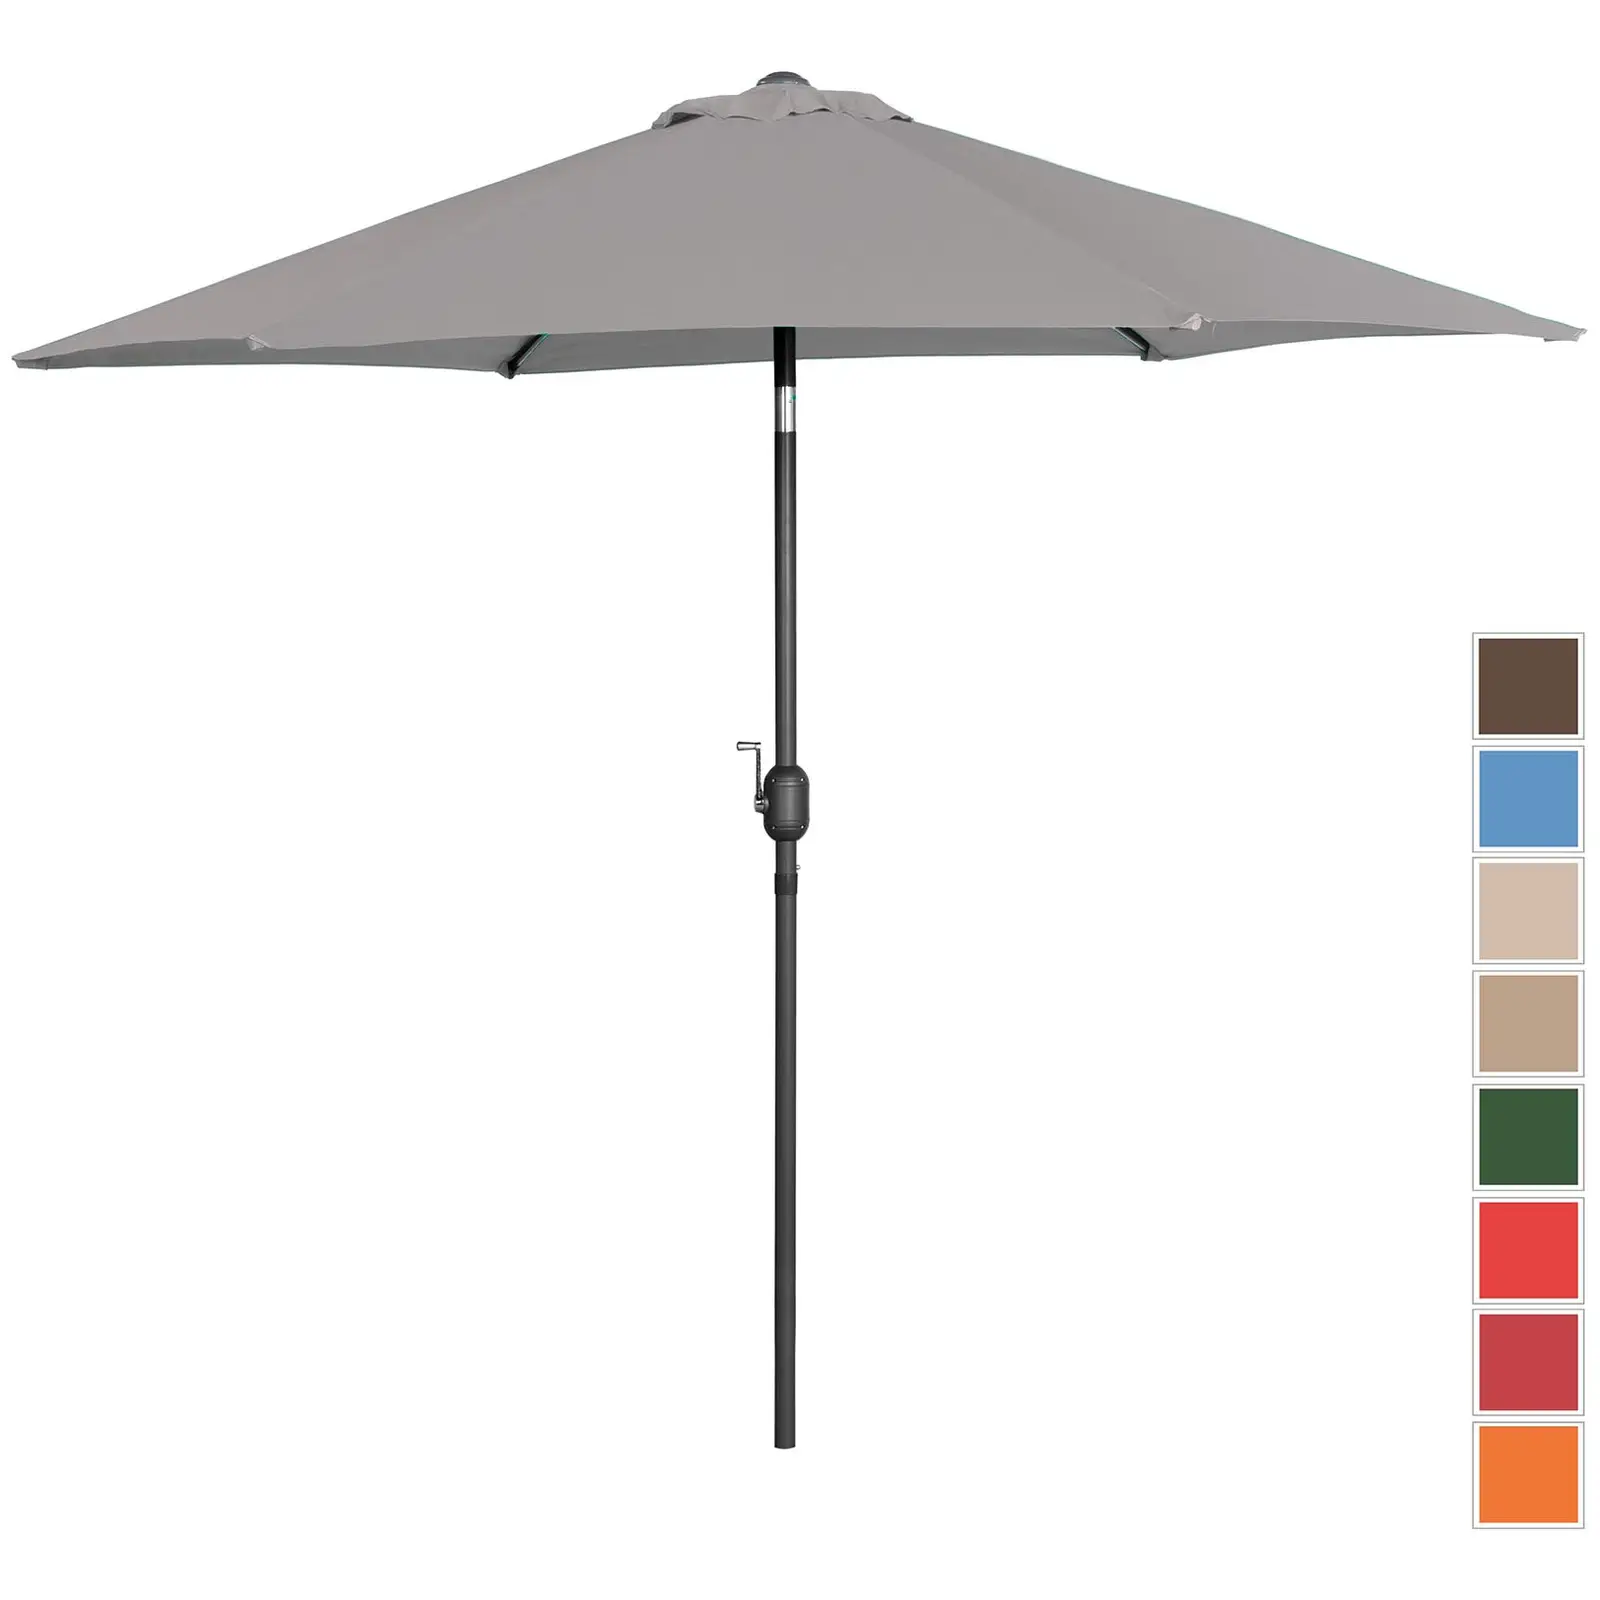 Parasol de terrasse – Gris foncé – Hexagonale – Ø 270 cm – Inclinable